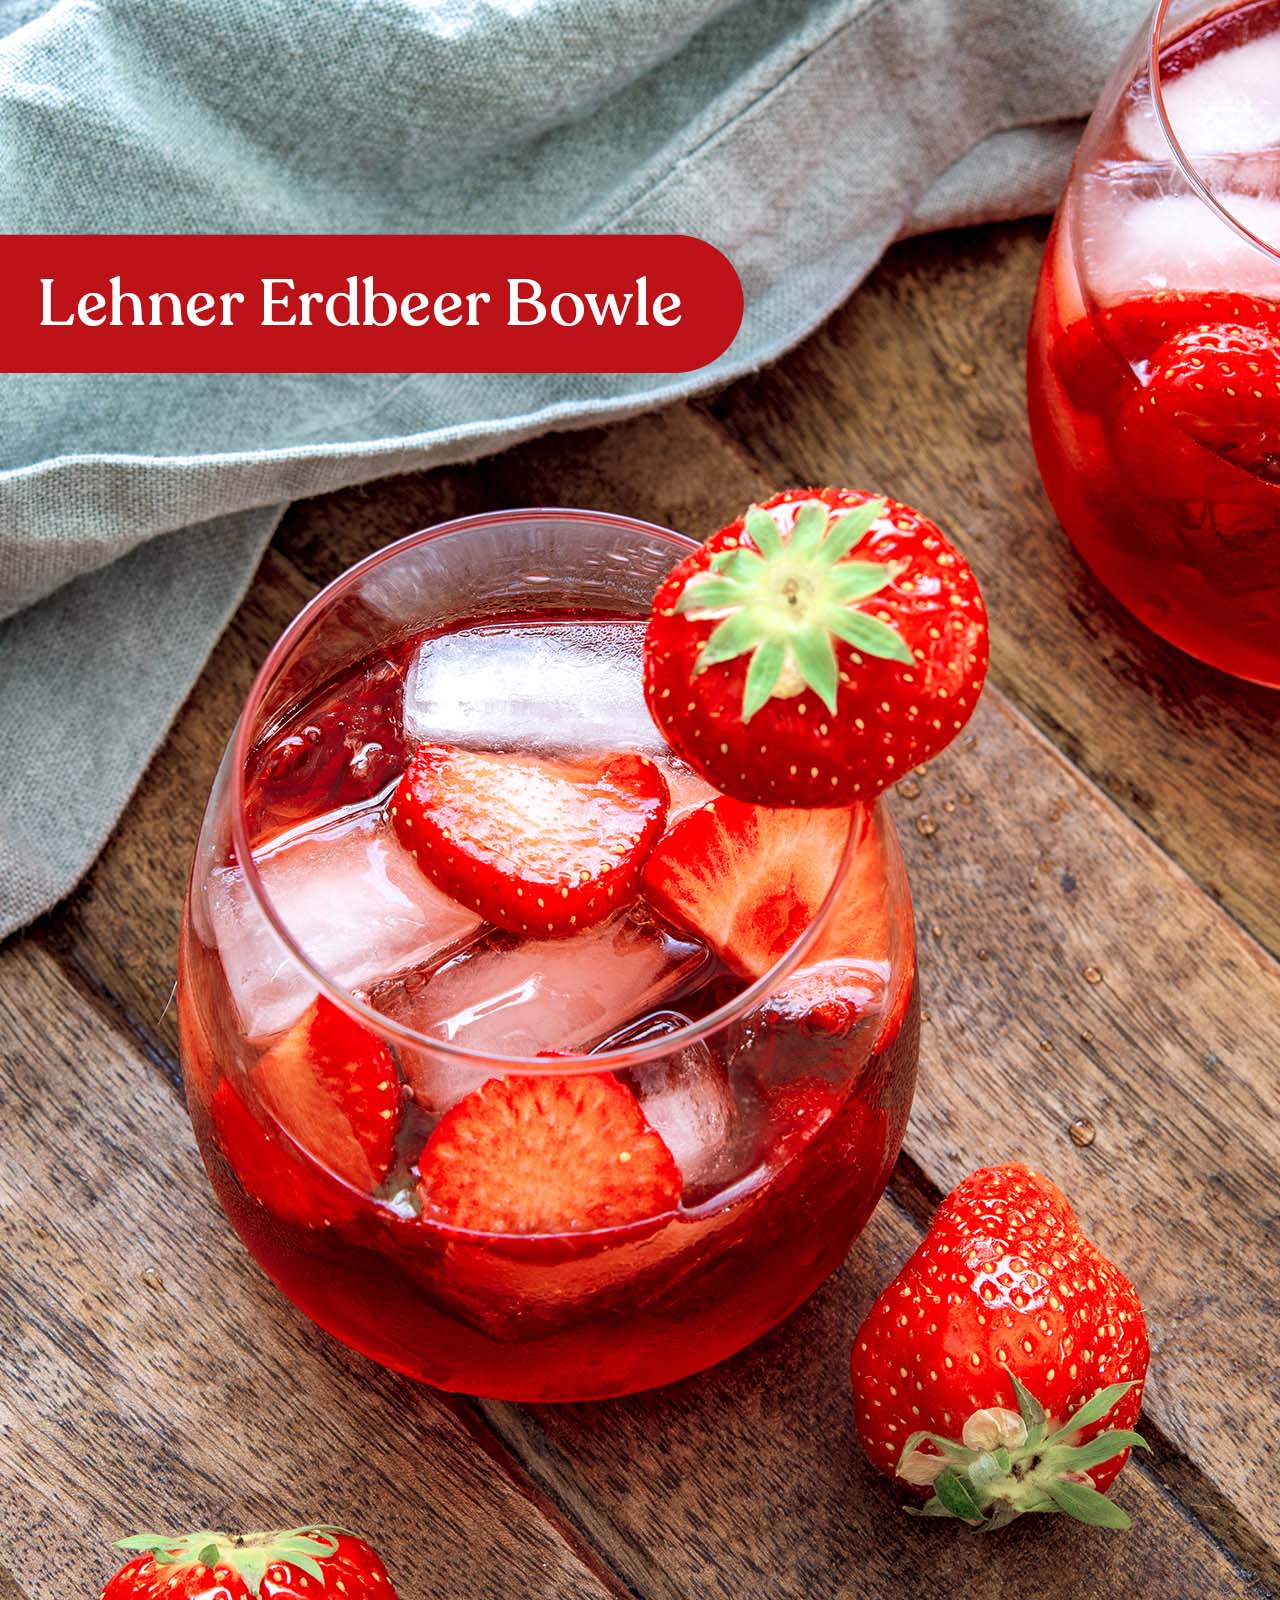 Lehner Erdbeer Bowle